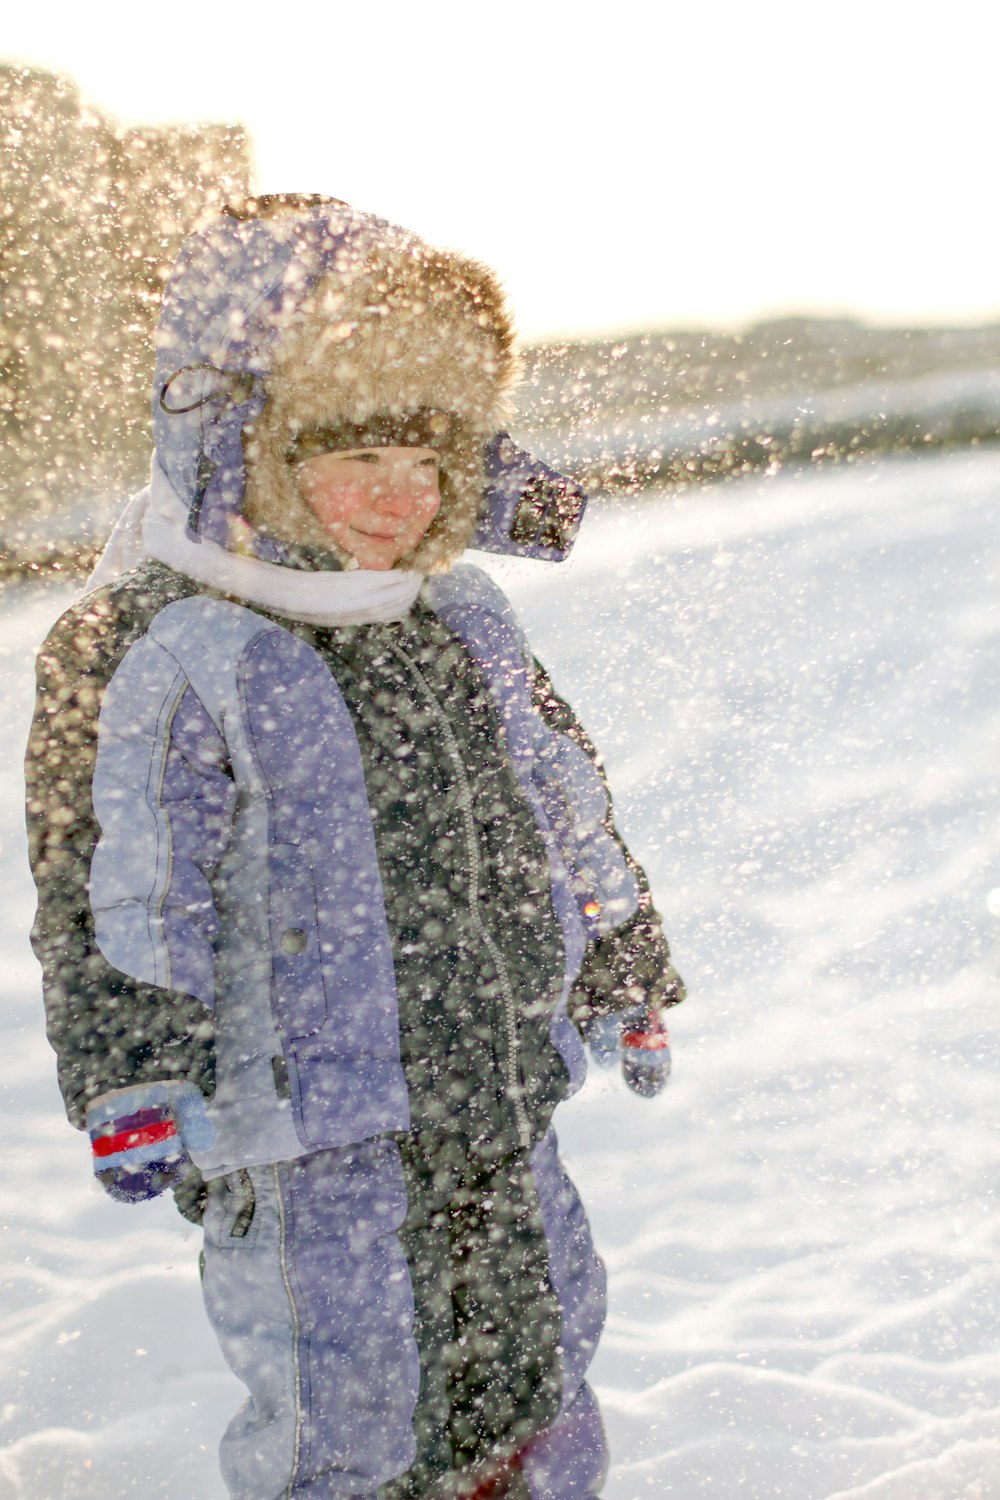 スノーボードを持って雪の中に立つ少年